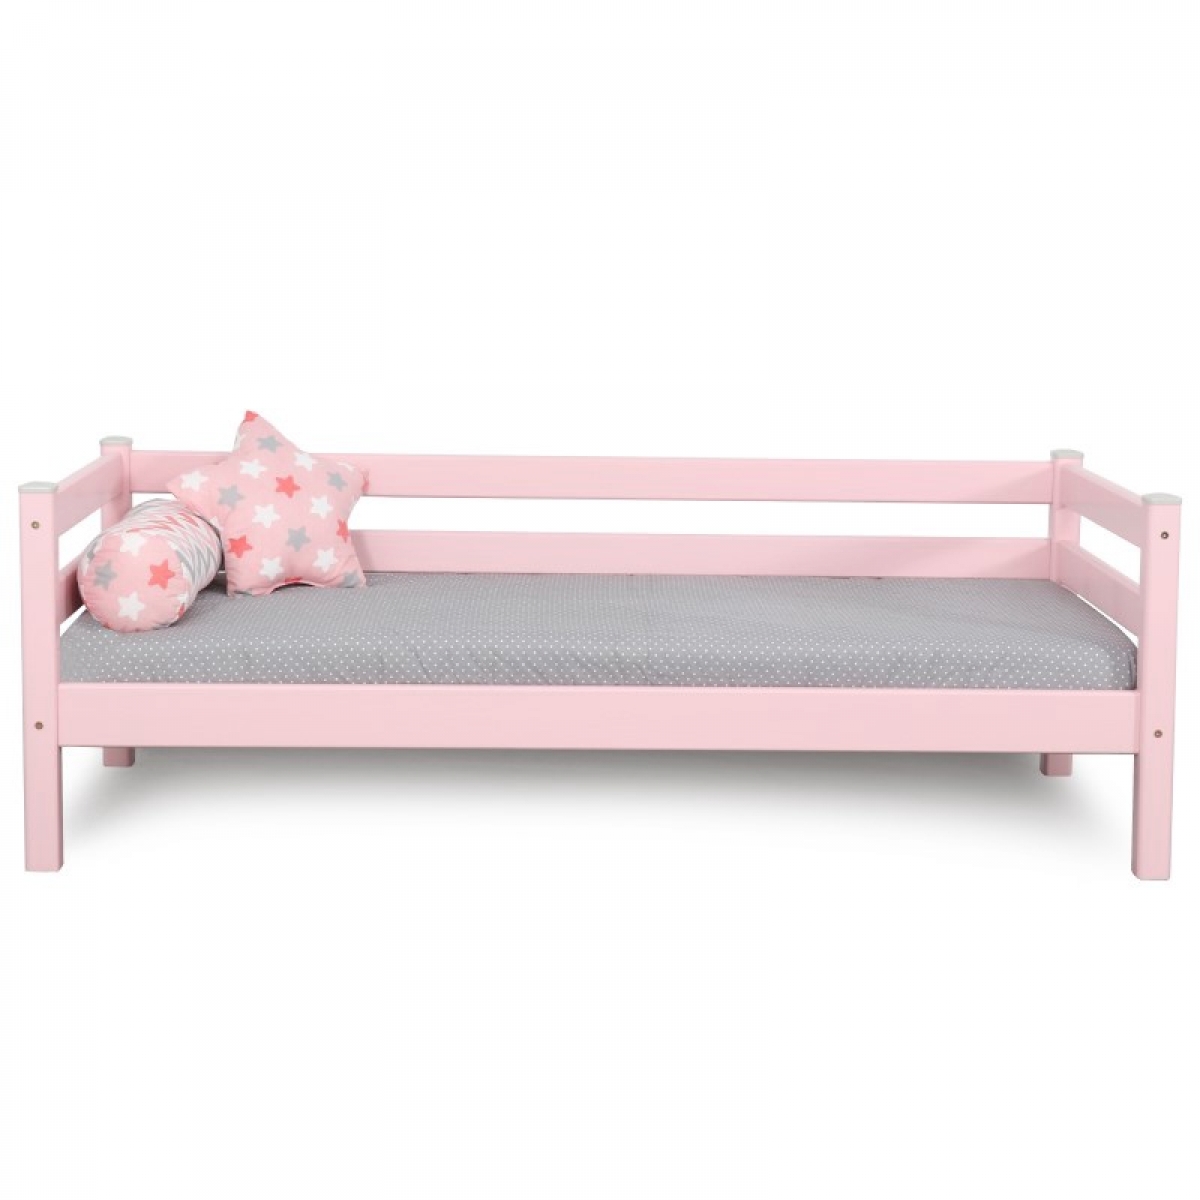 Кровать Соня Вариант 2 с задней защитой 190х80 (розовая)